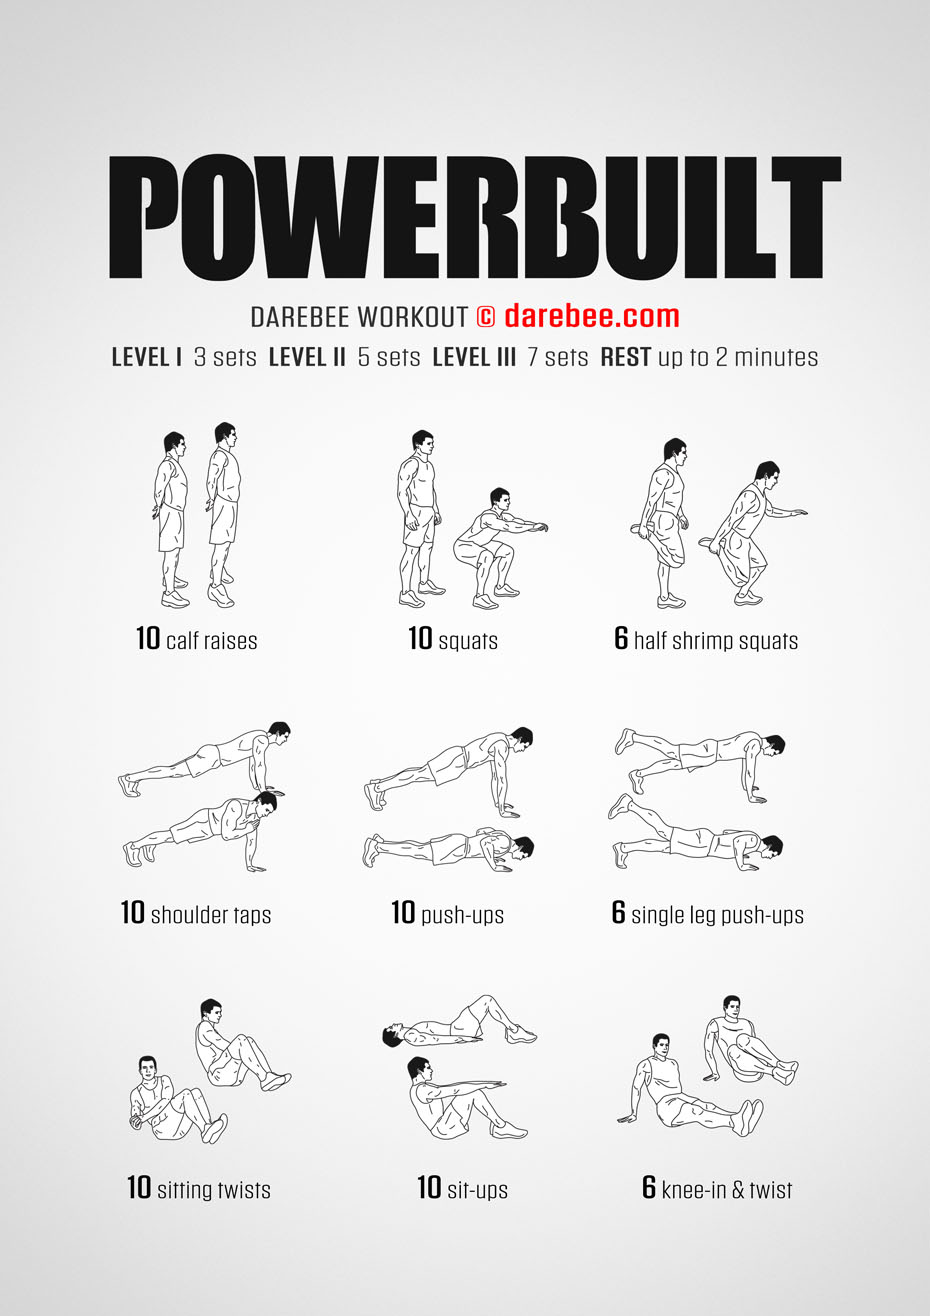 Powerbuilt Workout